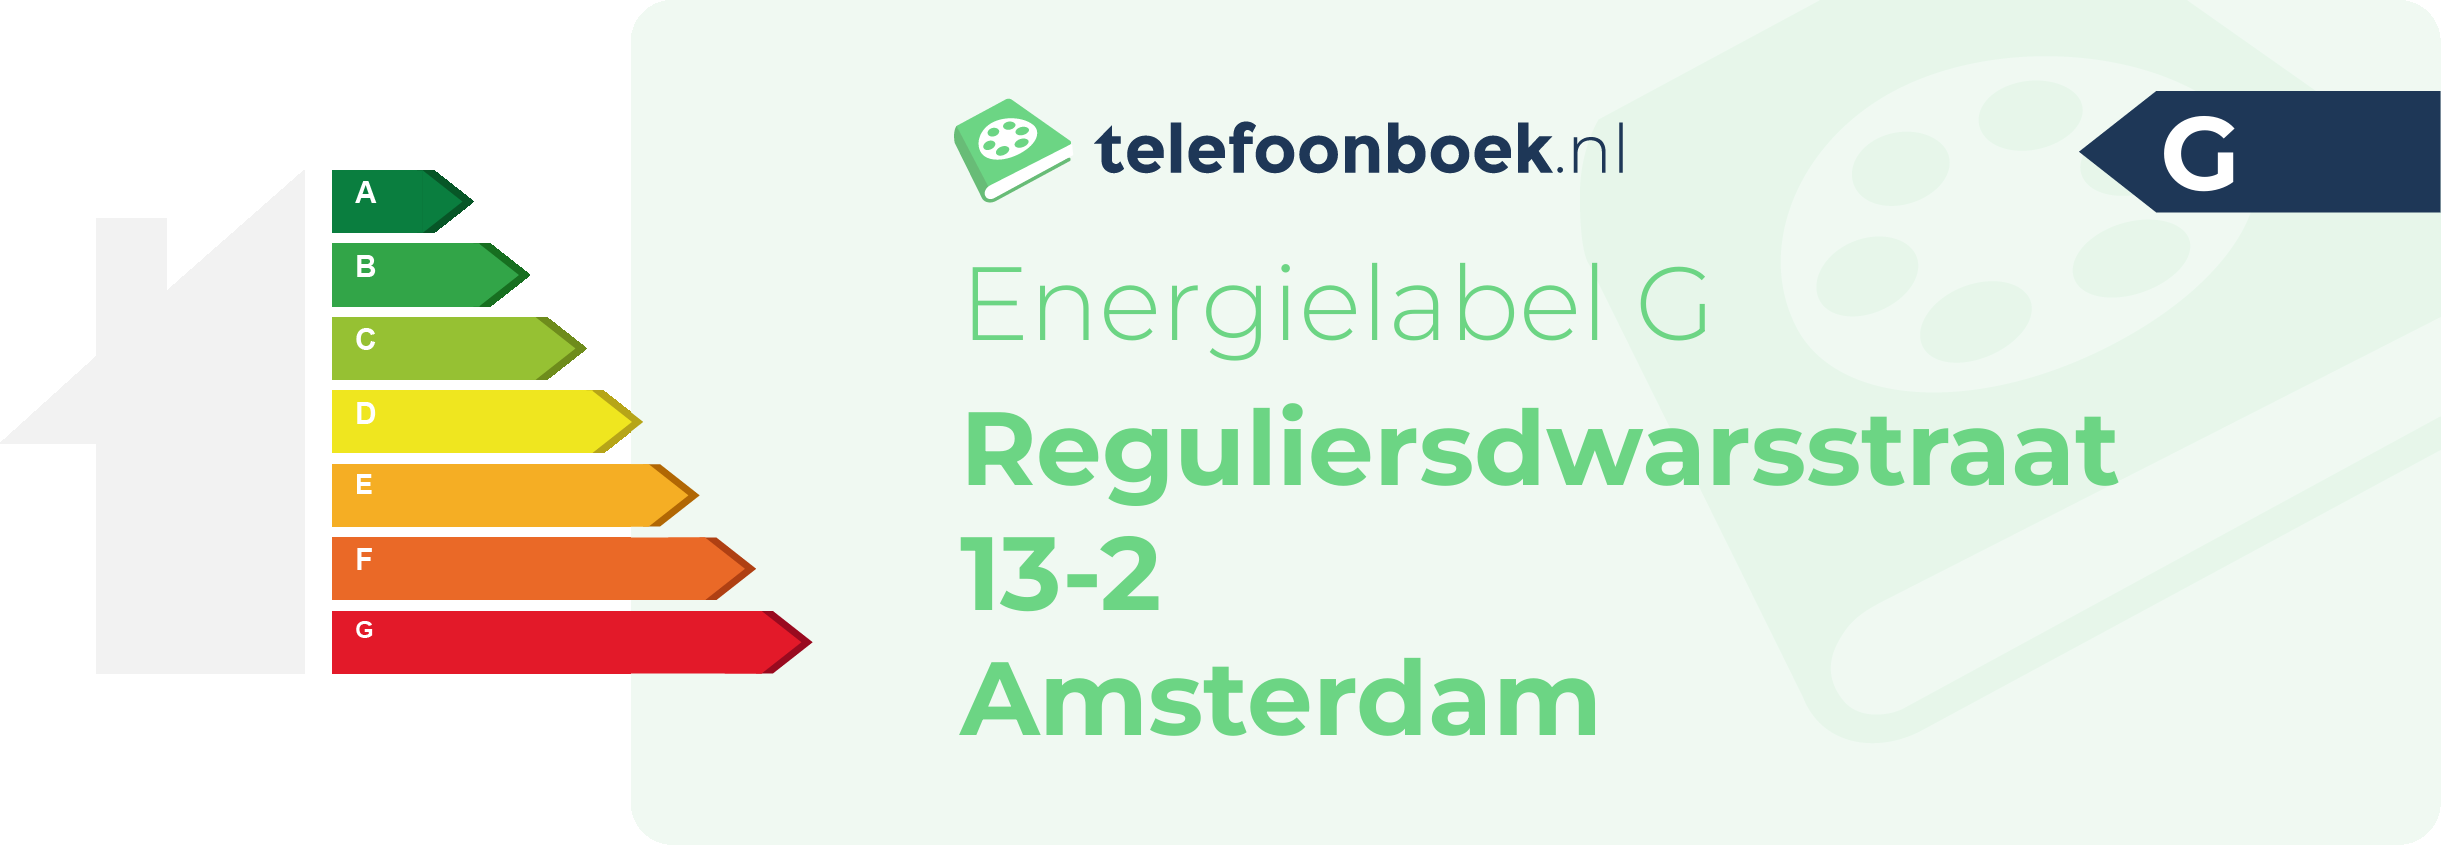 Energielabel Reguliersdwarsstraat 13-2 Amsterdam